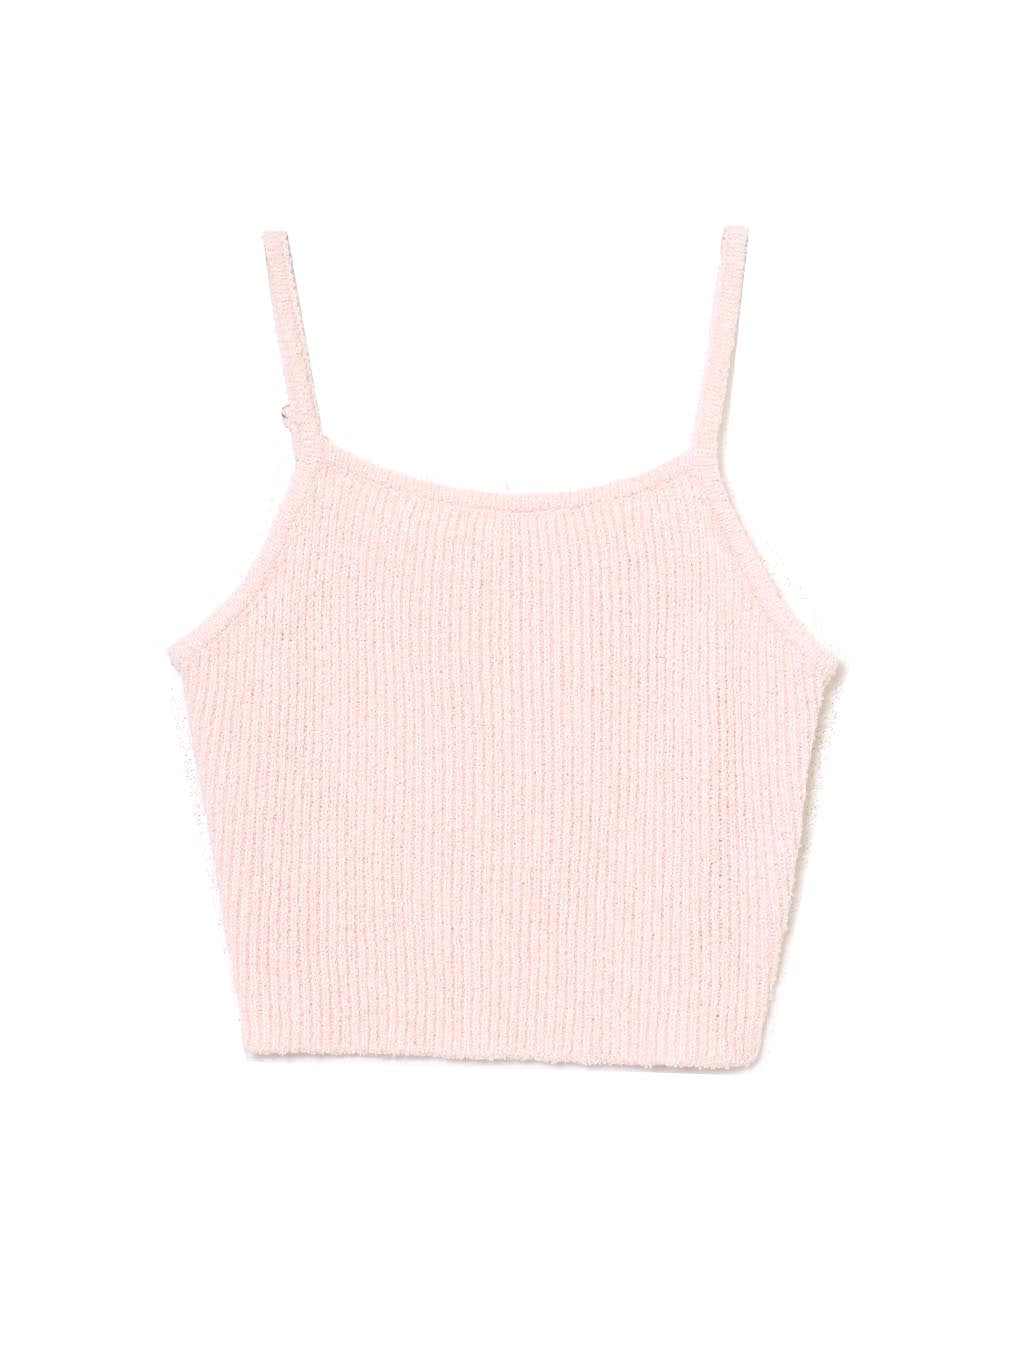 アンドマリーFiona ribbon knit set Pink andmary